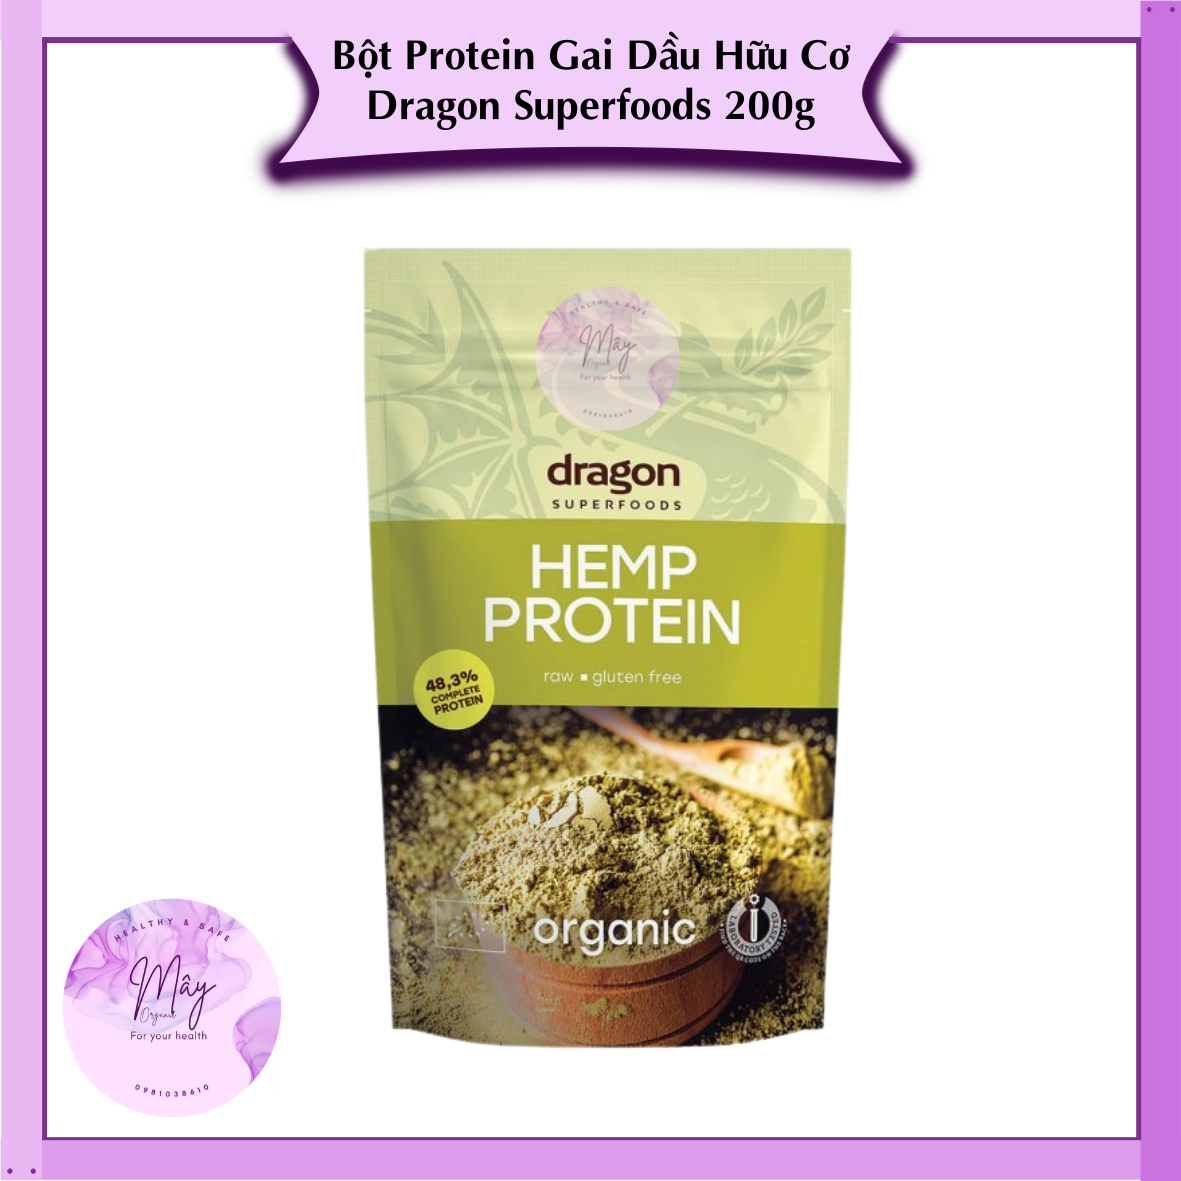 Bột Protein Hạt Gai Dầu Hữu Cơ Dragon Superfoods 200g Organic Hemp Powder